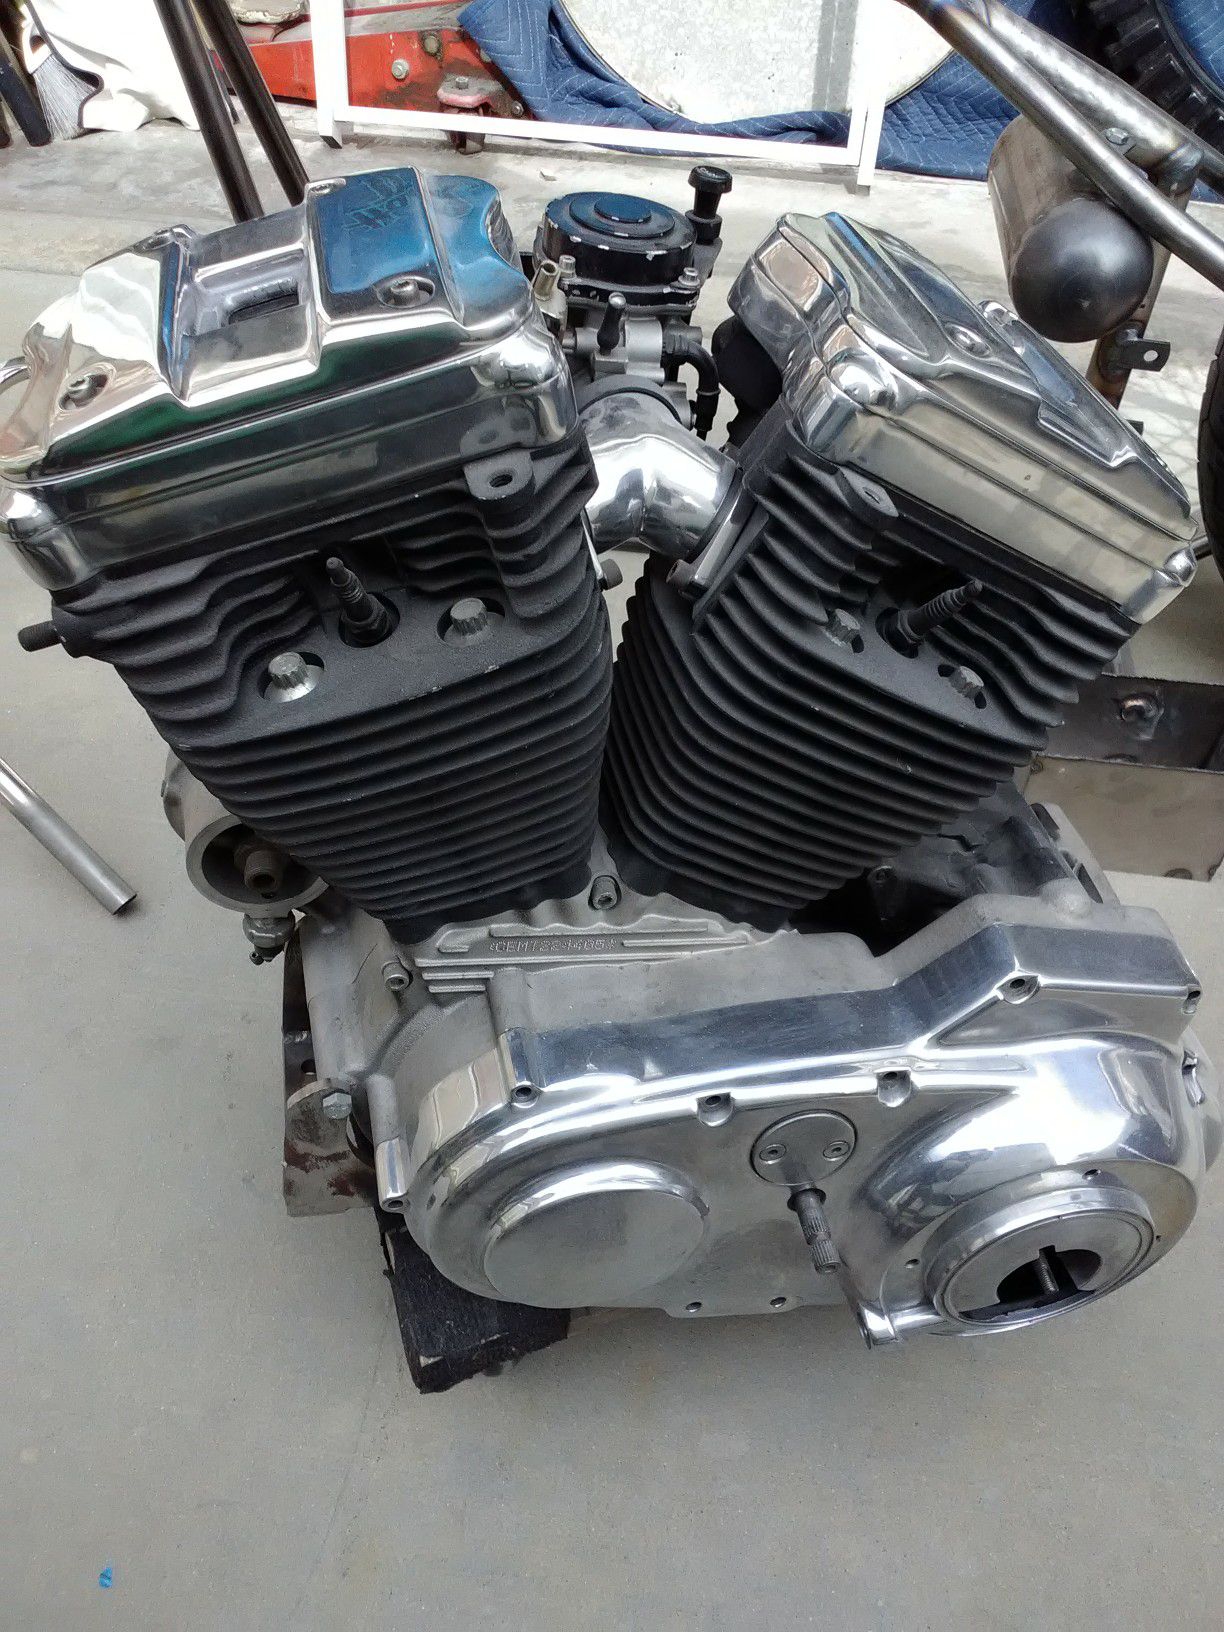 Harley Davidson motor and transmission